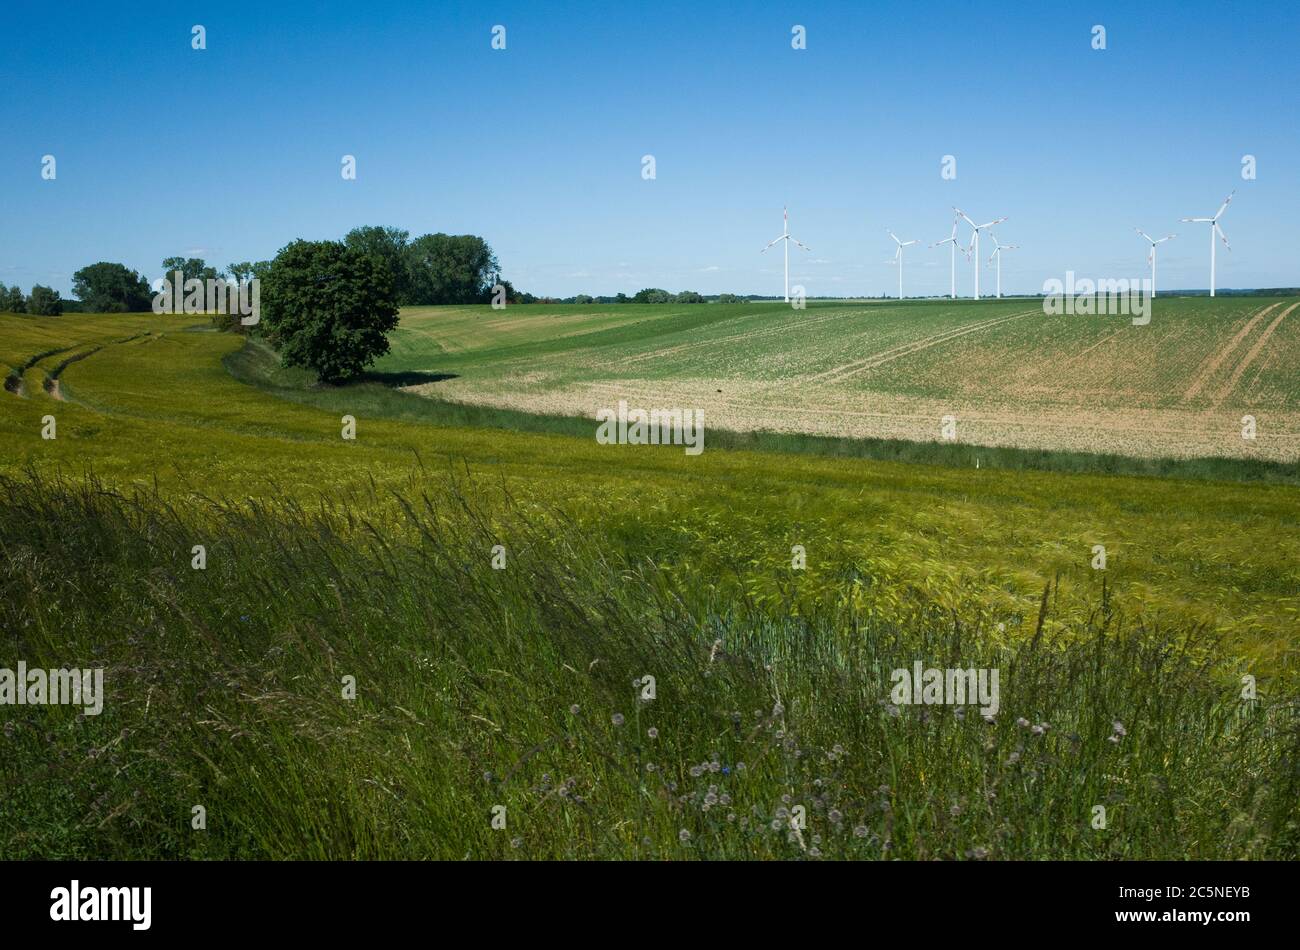 windmills on field Stock Photo